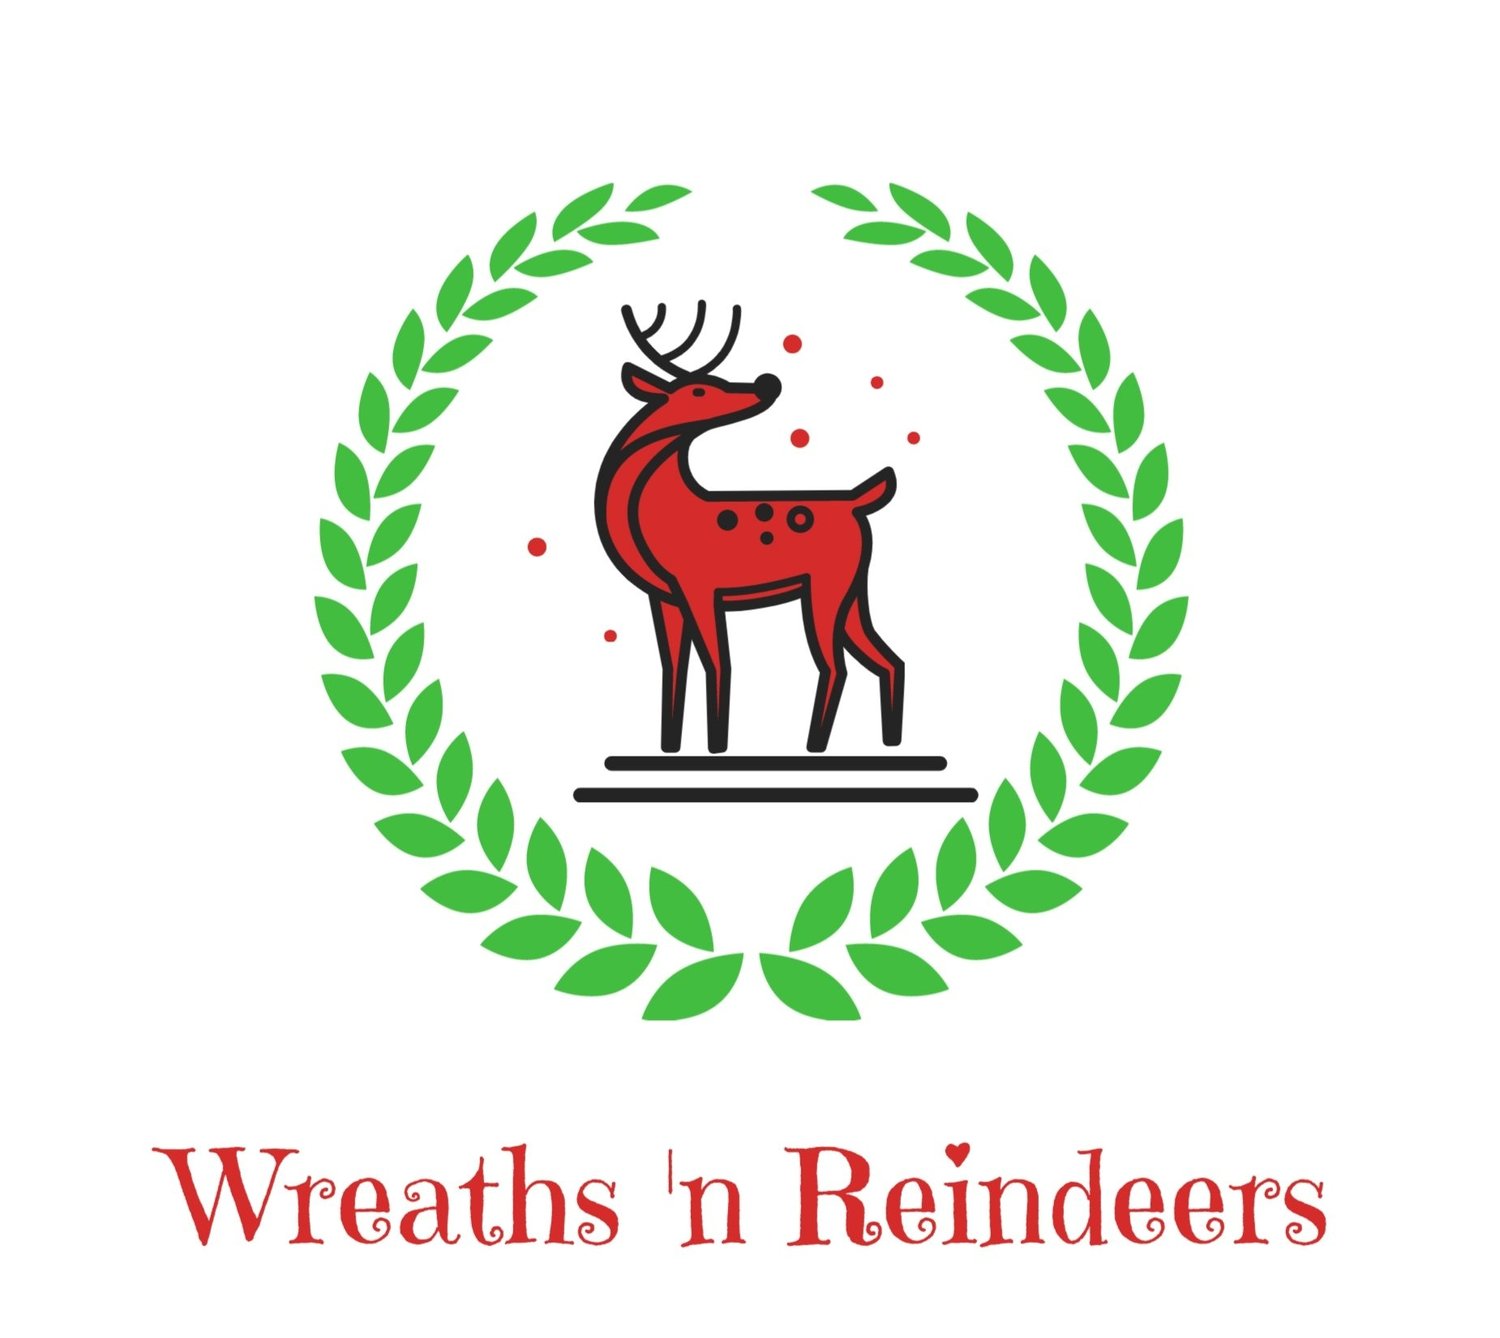 Wreaths &#39;n Reindeers Ltd